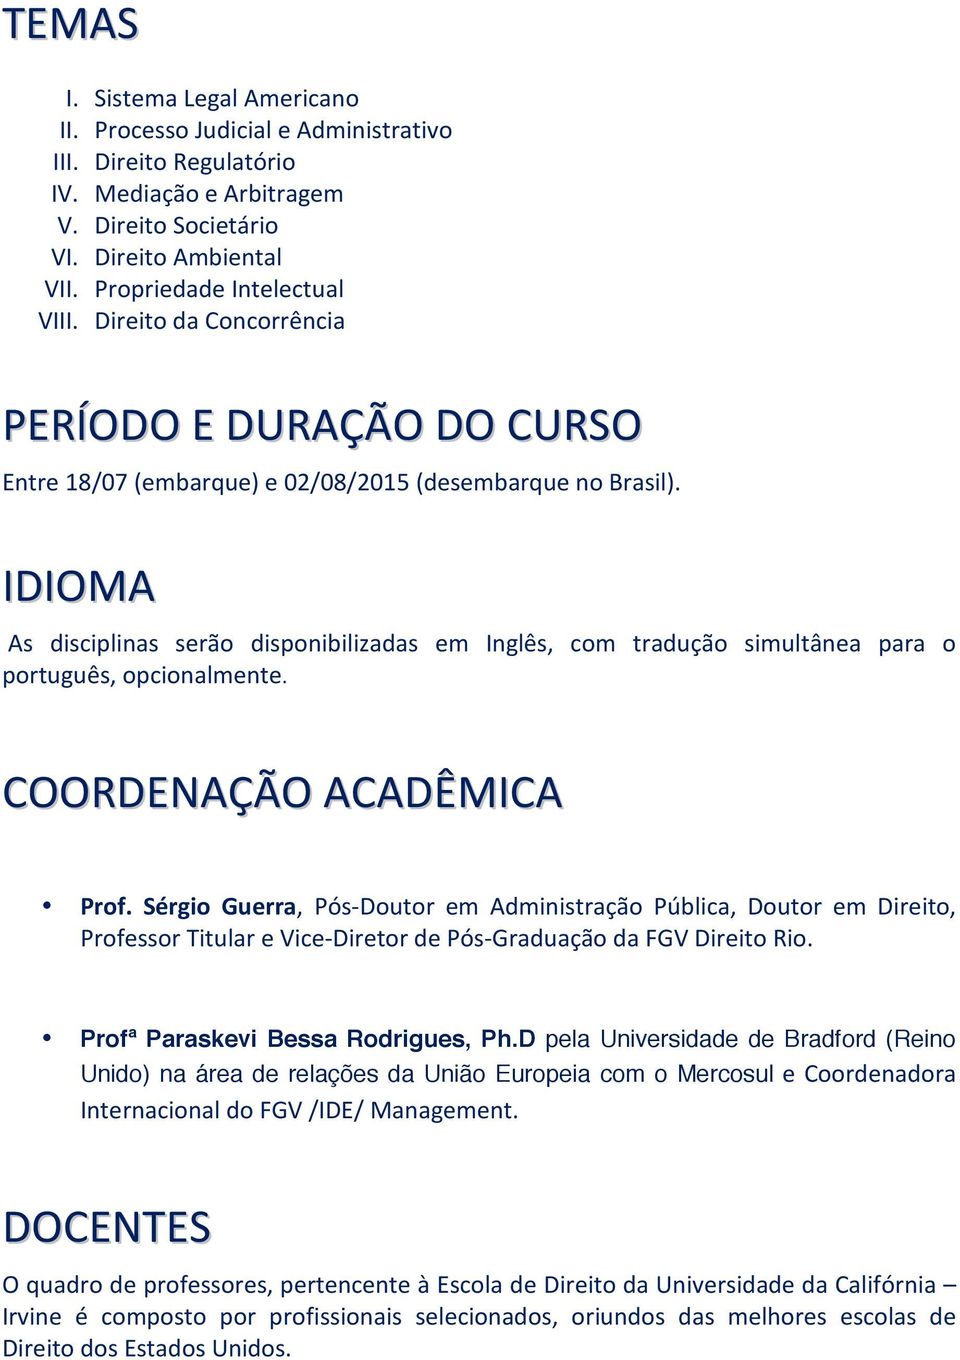 IDIOMA As disciplinas serão disponibilizadas em Inglês, com tradução simultânea para o português, opcionalmente. COORDENAÇÃO ACADÊMICA Prof.